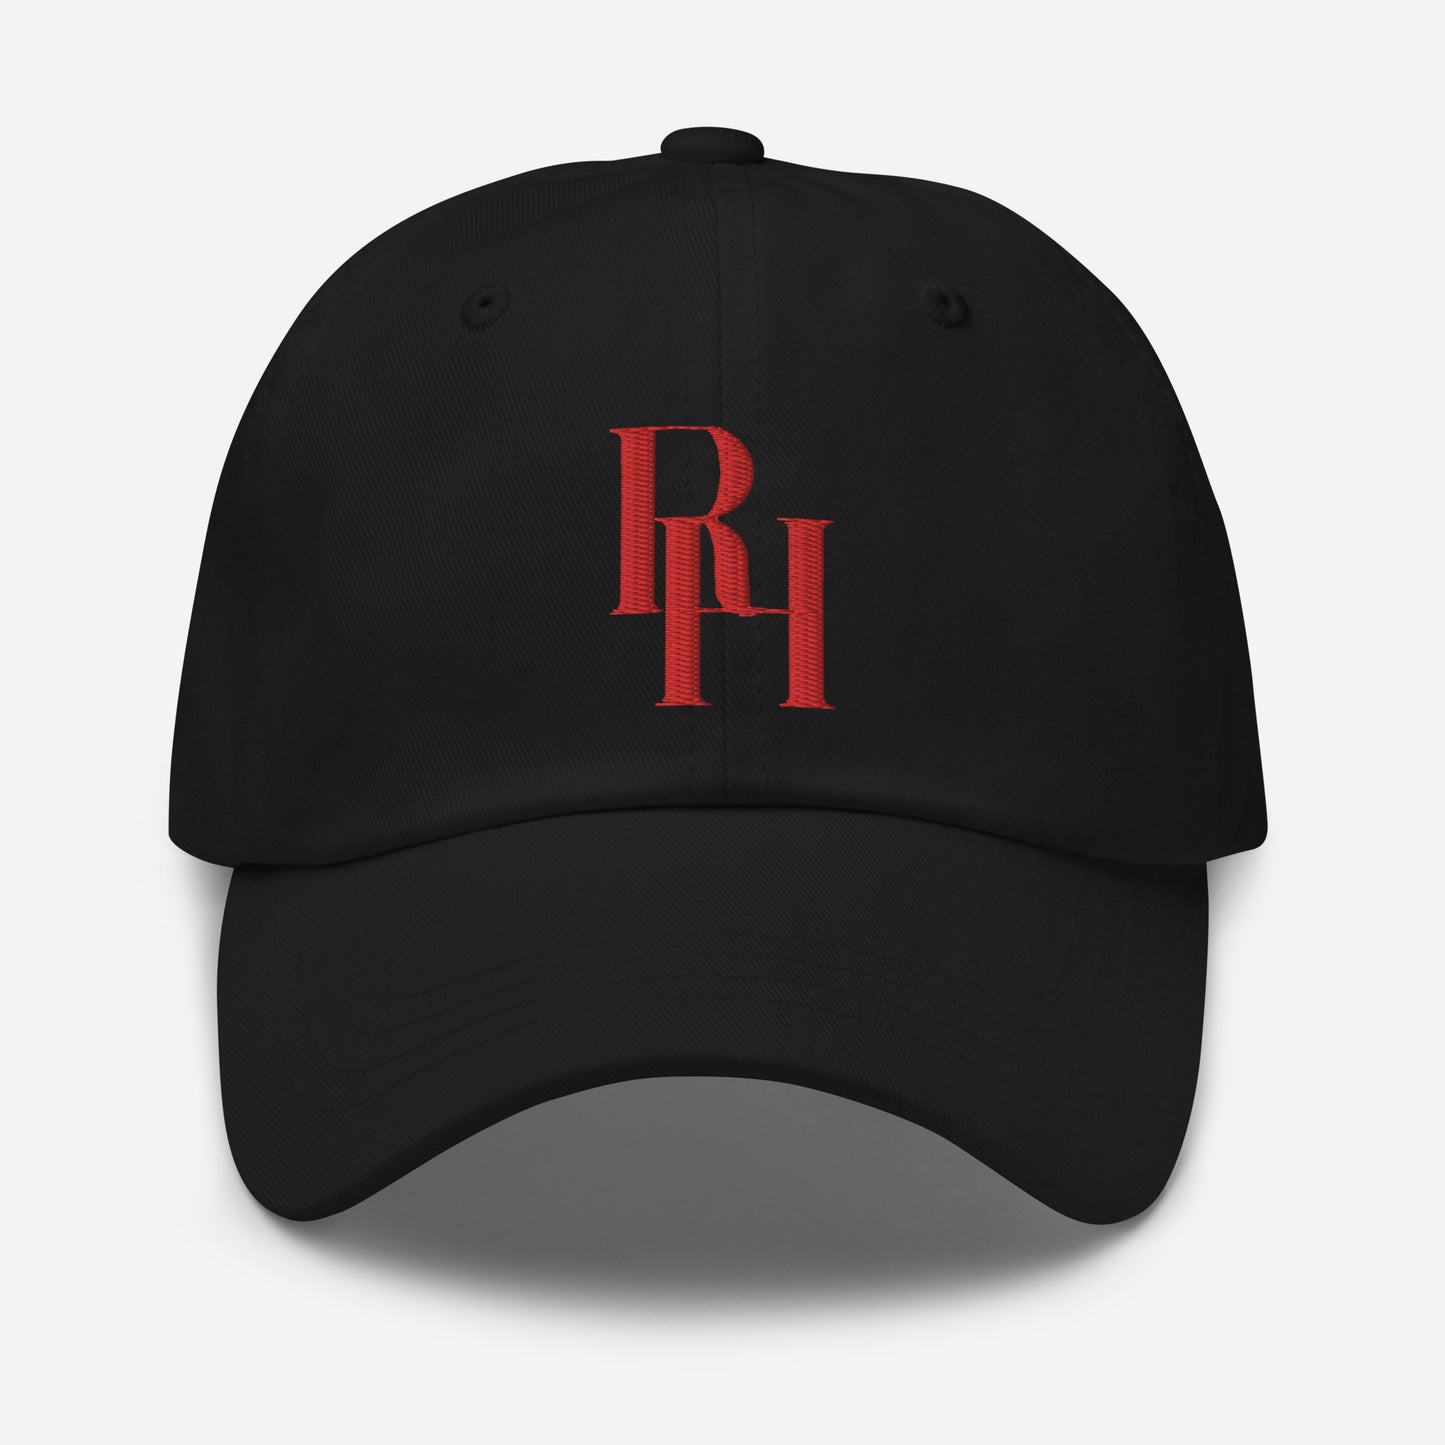 RH logo Dad hat